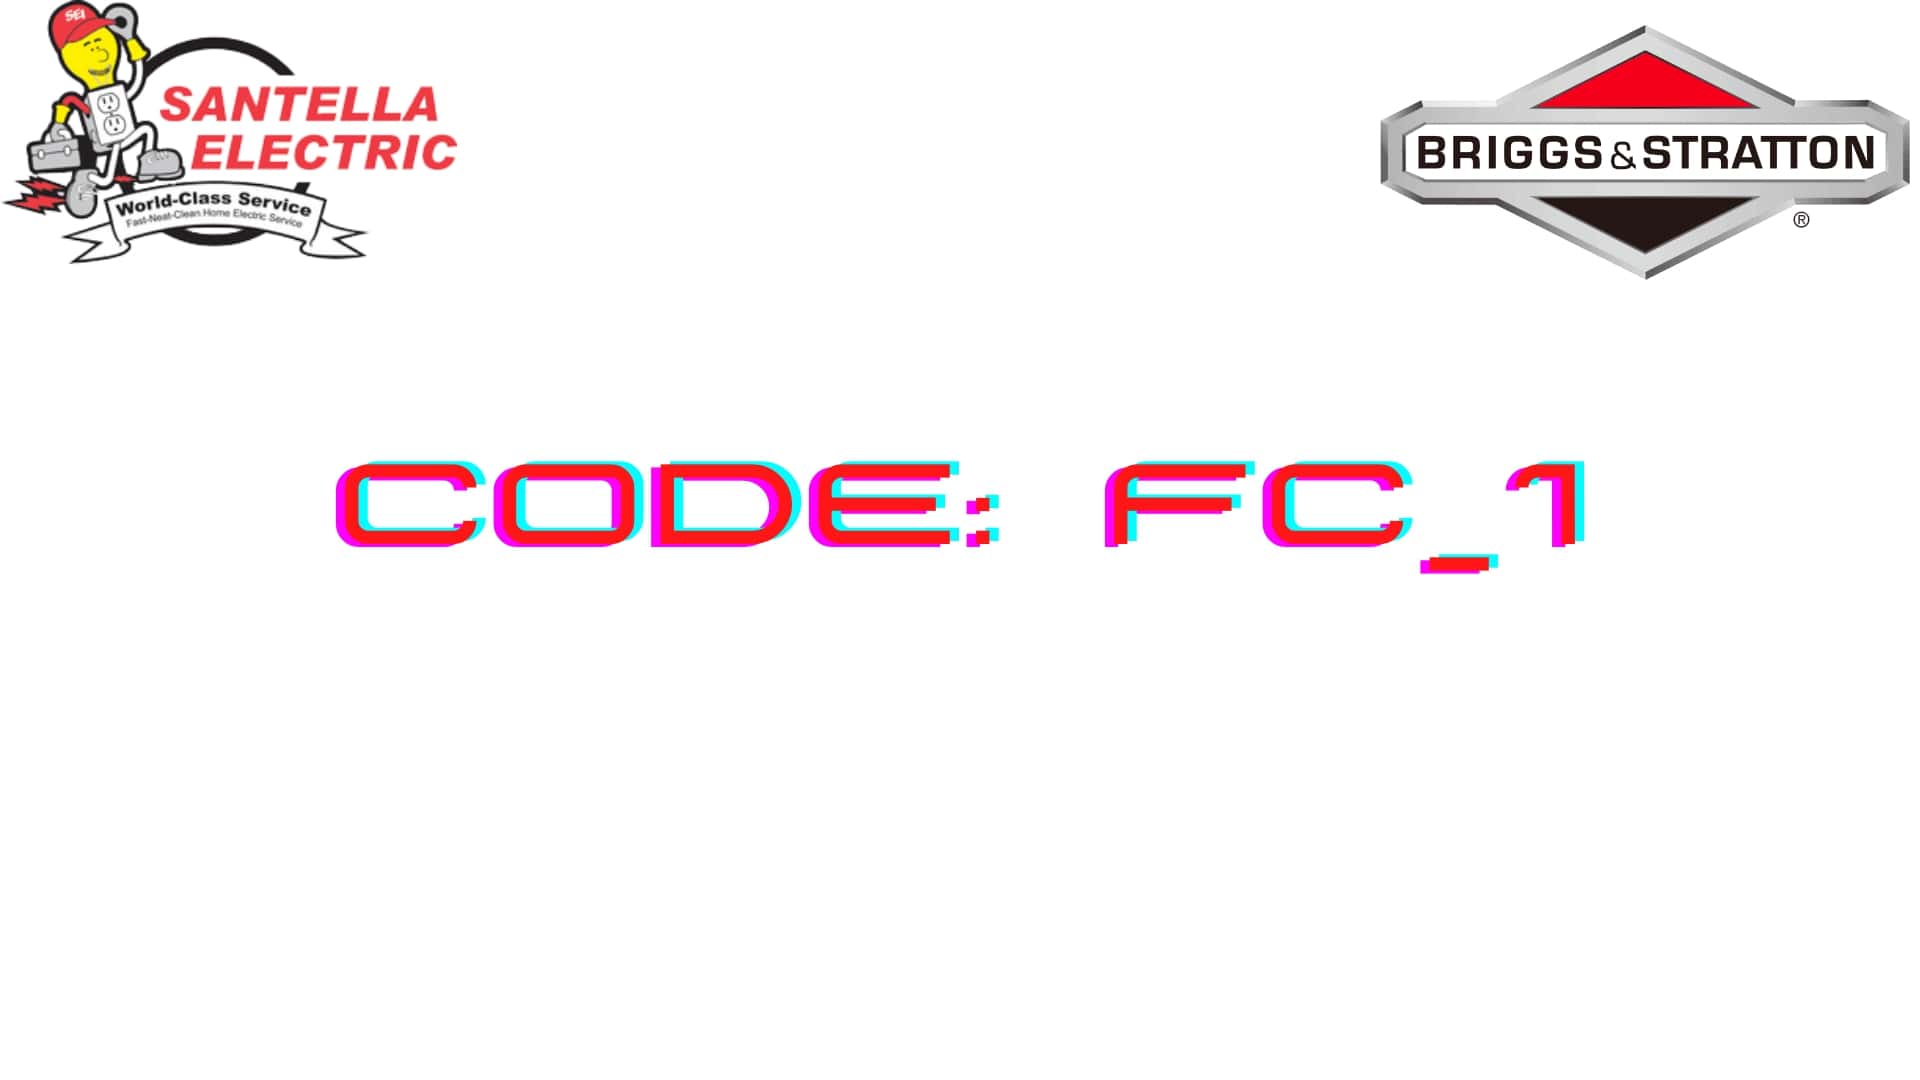 Briggs and Stratton Error Code - Code FC_1